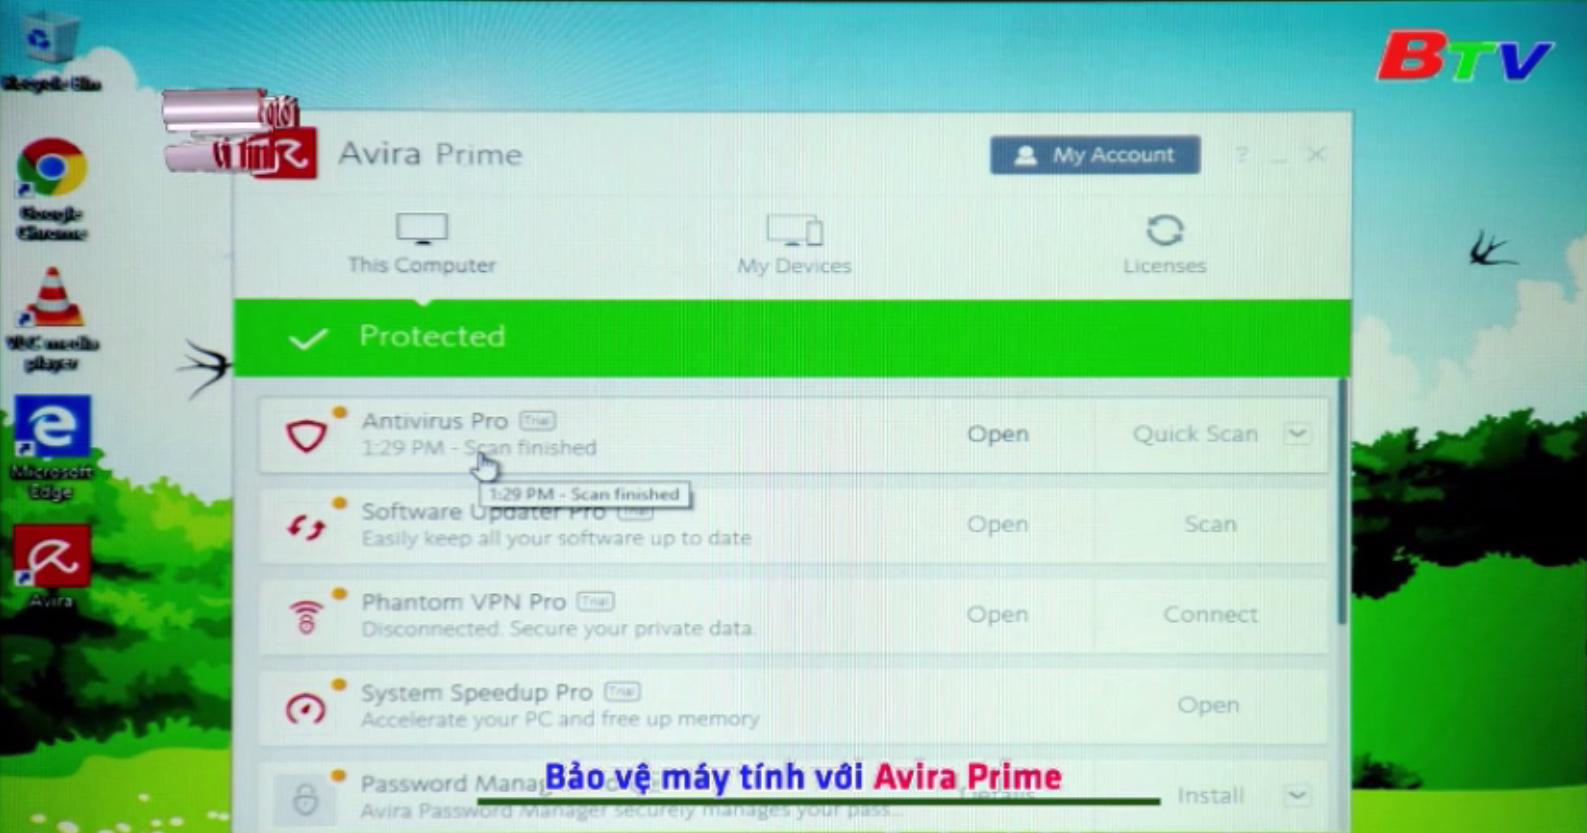 Bảo vệ máy tính với Avira Prime